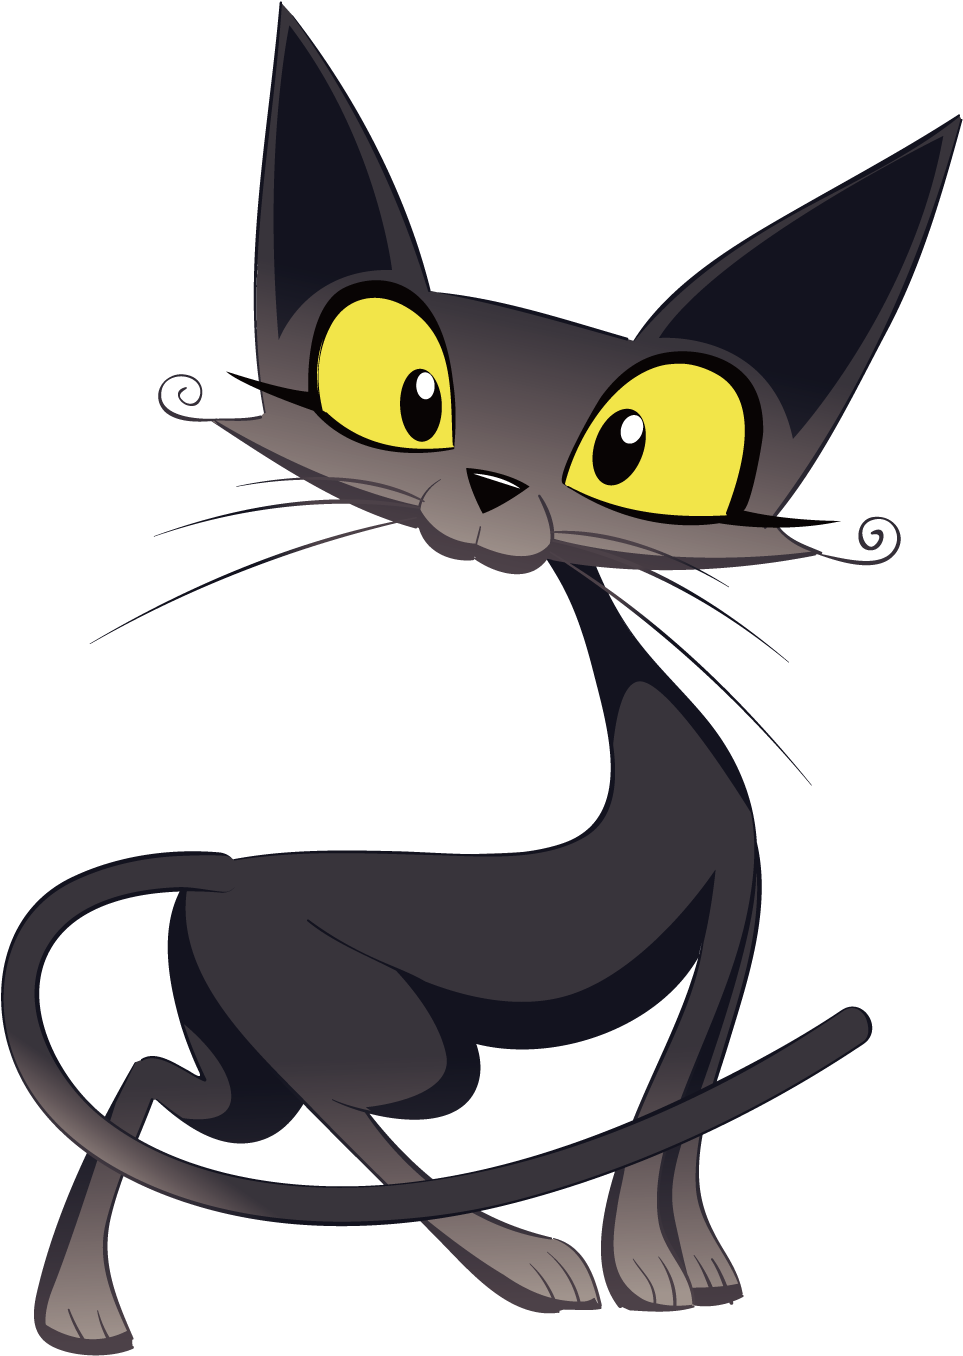 Whiskers Kitten Cat Hello Kitty Illustration - Whiskers Kitten Cat Hello Kitty Illustration (1600x1600)